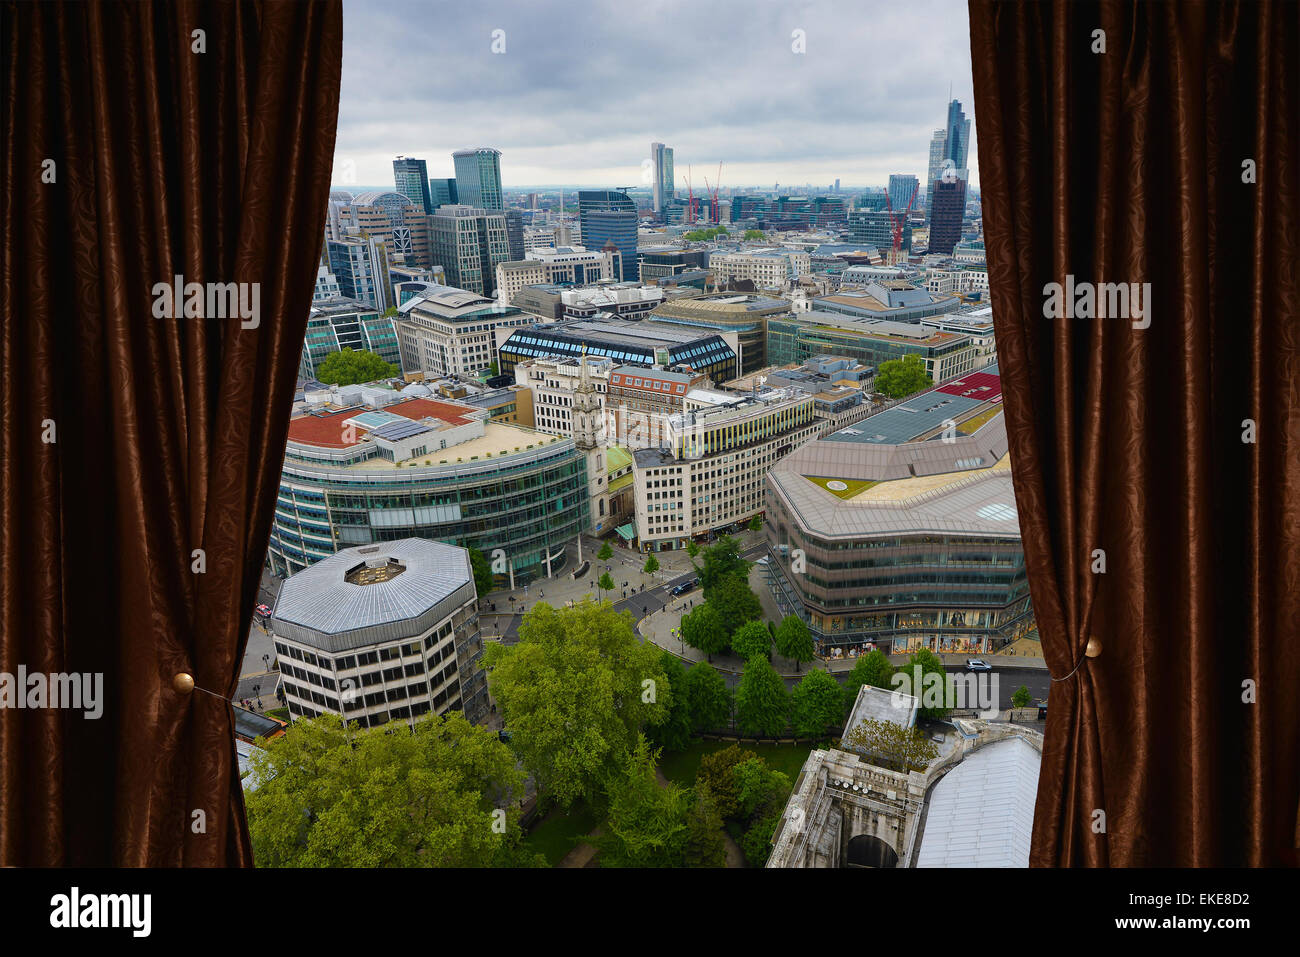 Blick auf die Stadt hinter braunen Vorhang Stockfoto